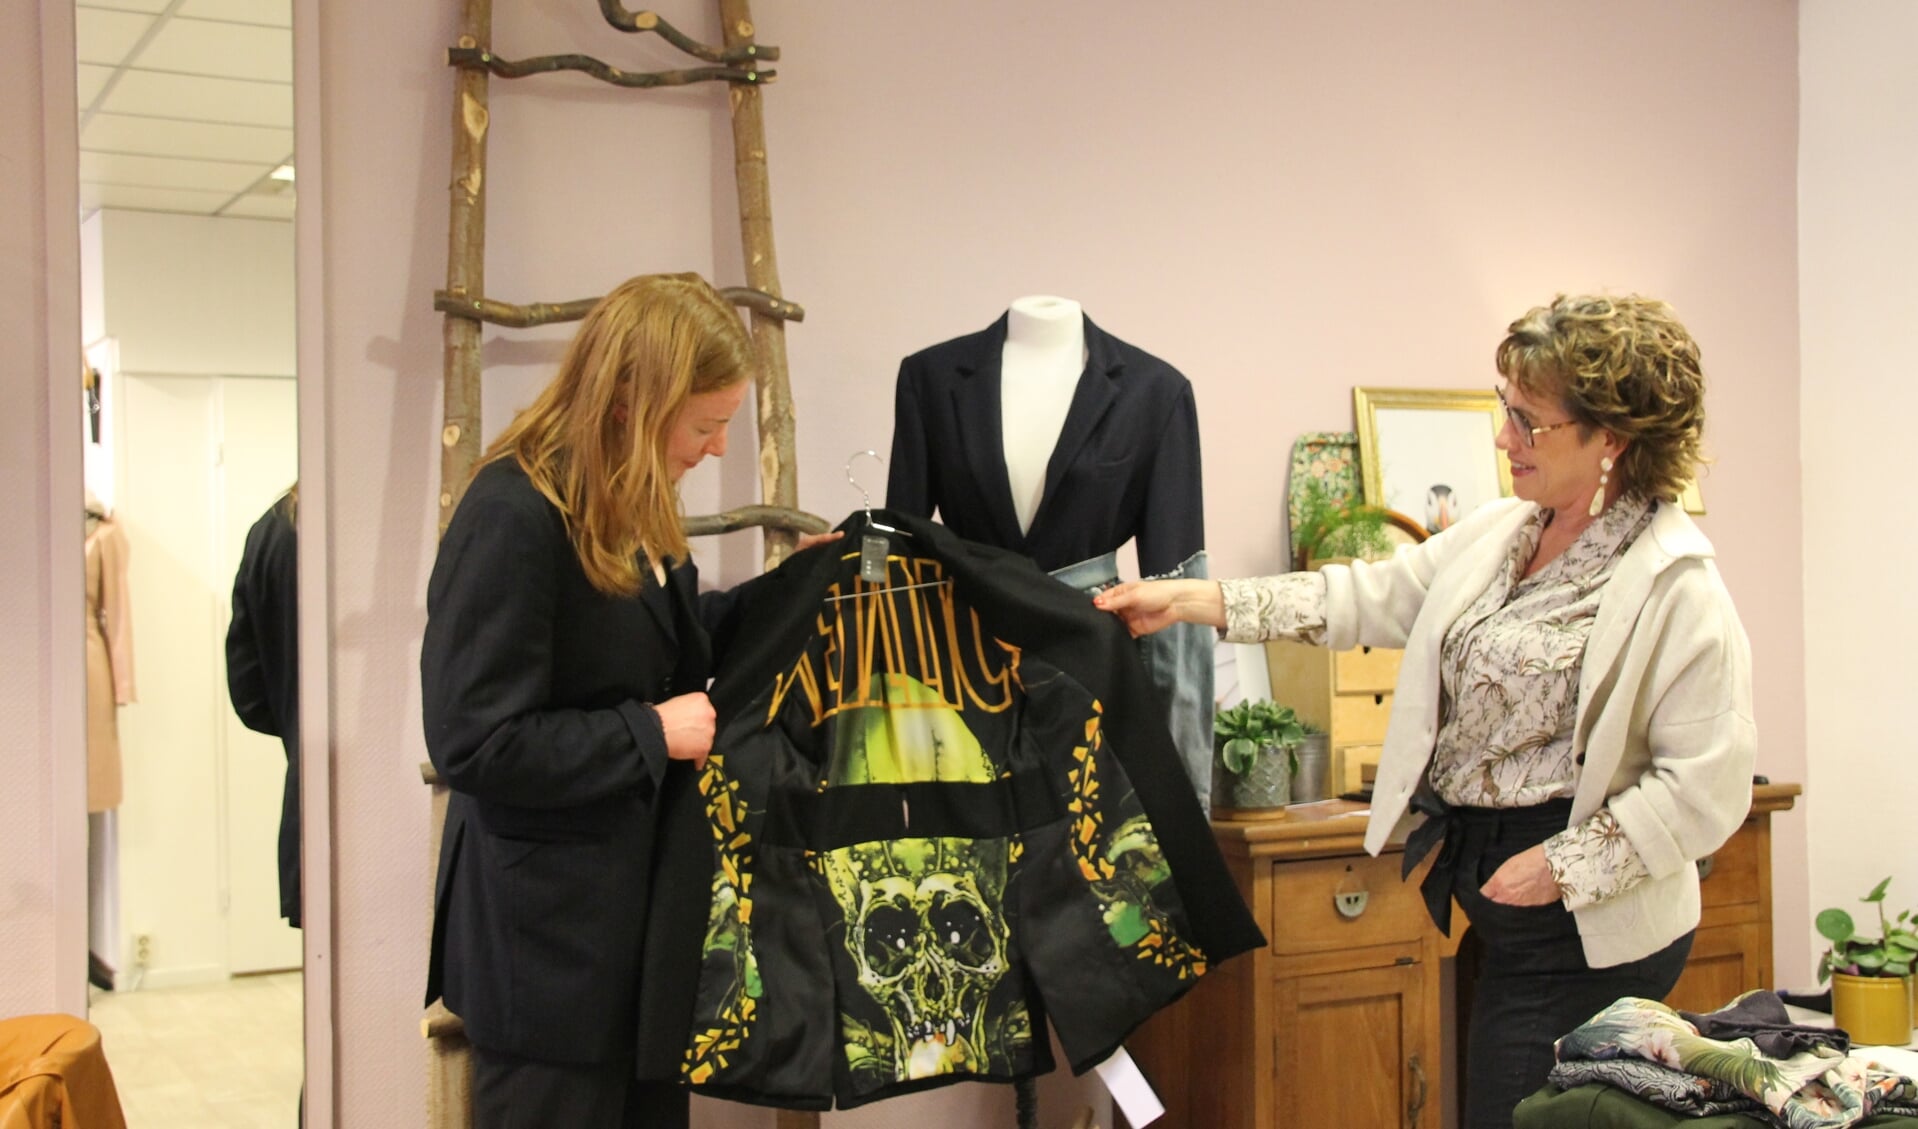 Bo Krabben laat Ingrid Wekking zien hoe ze een vlag van haar favoriete band als voering in een jasje heeft verwerkt. Foto: Annekée Cuppers